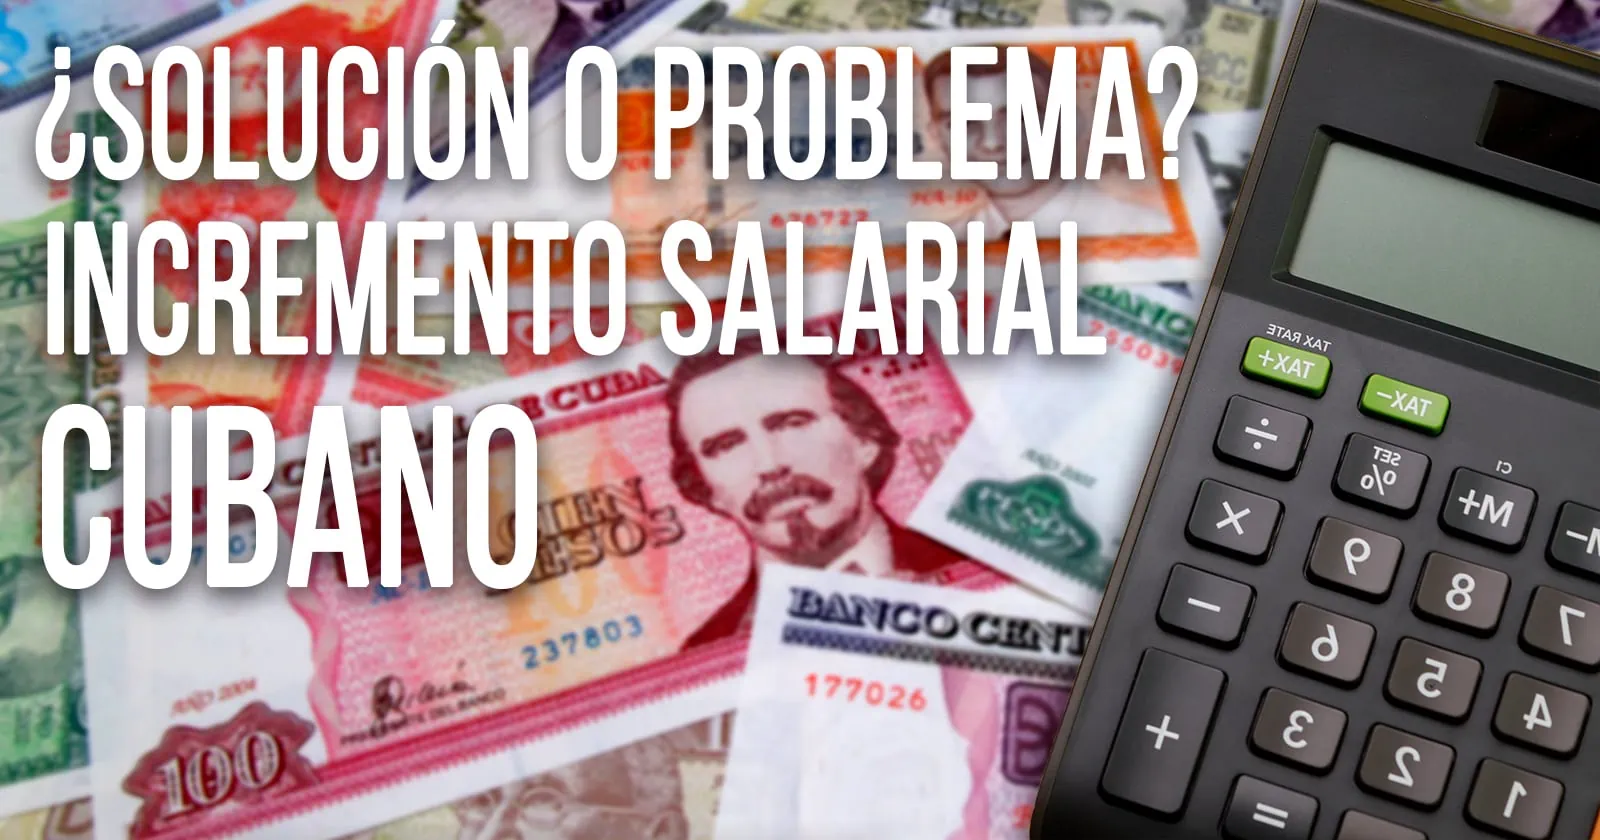 Incremento Salarial a Dos Sectores Priorizados Cubanos: ¿Solución o problema?